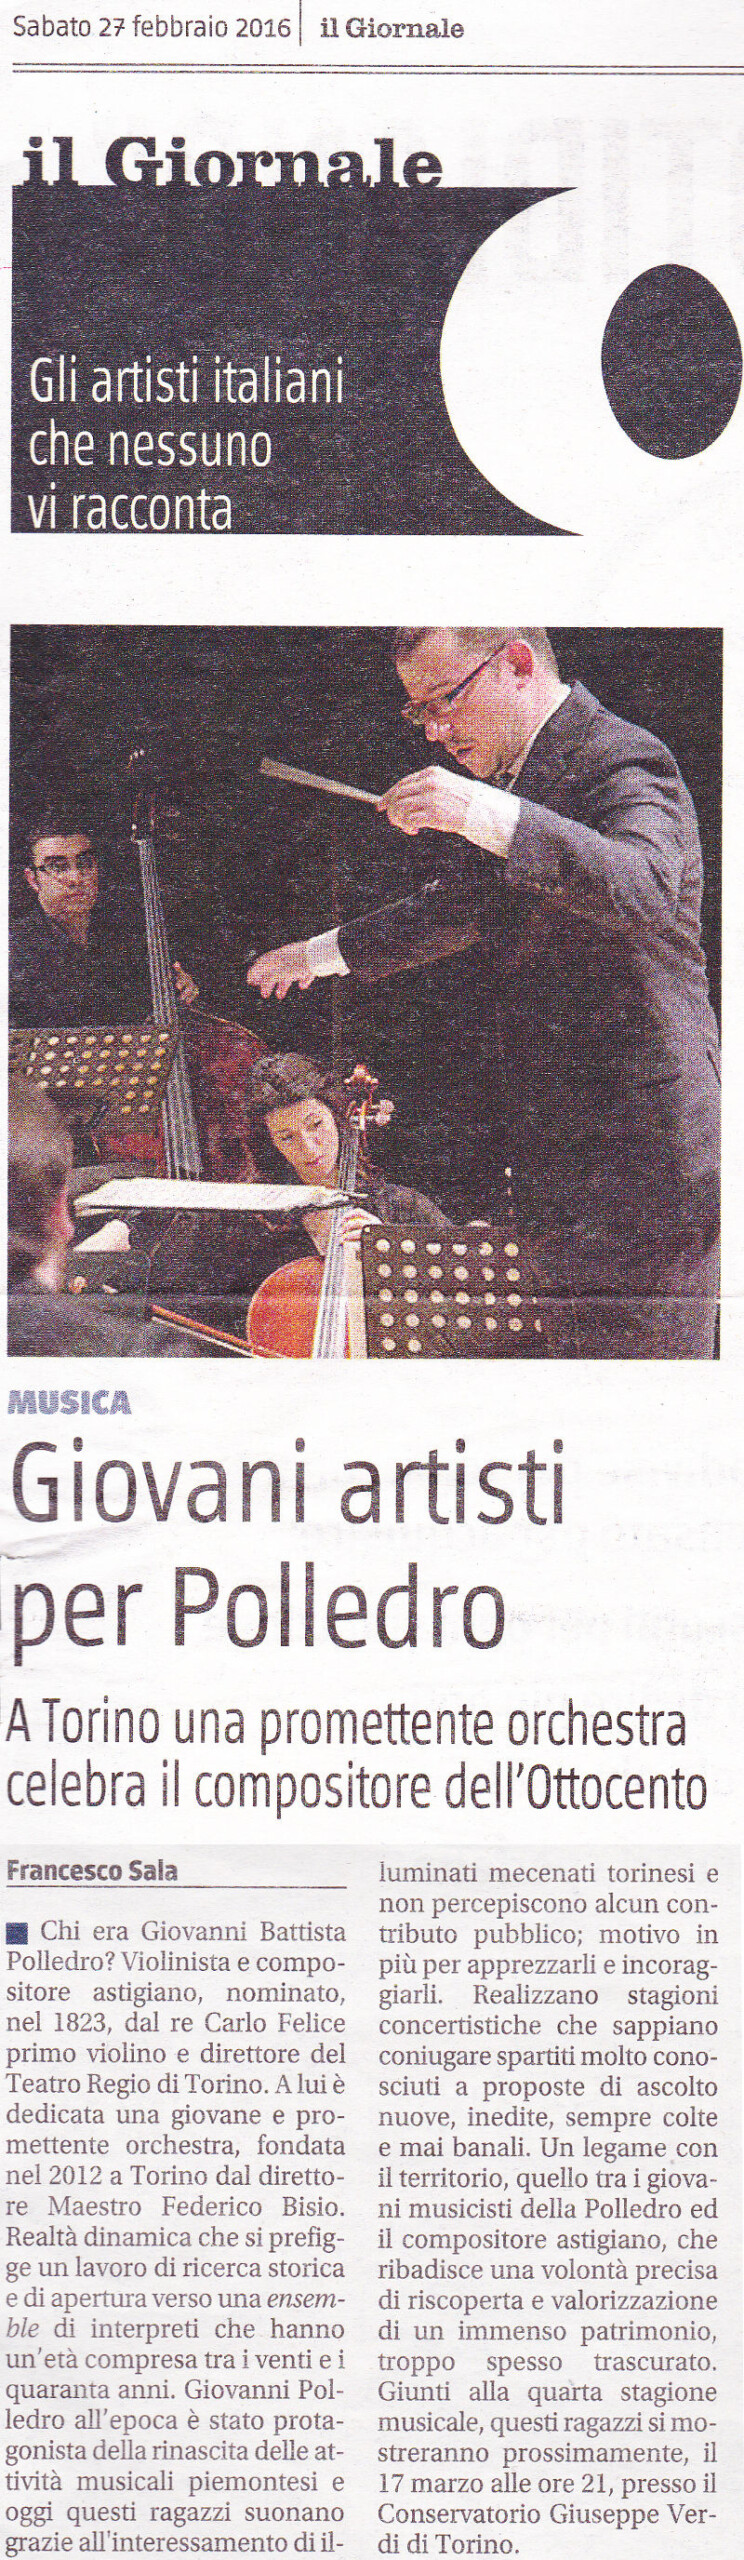 Giovani artisti dell'Orchestra Polledro